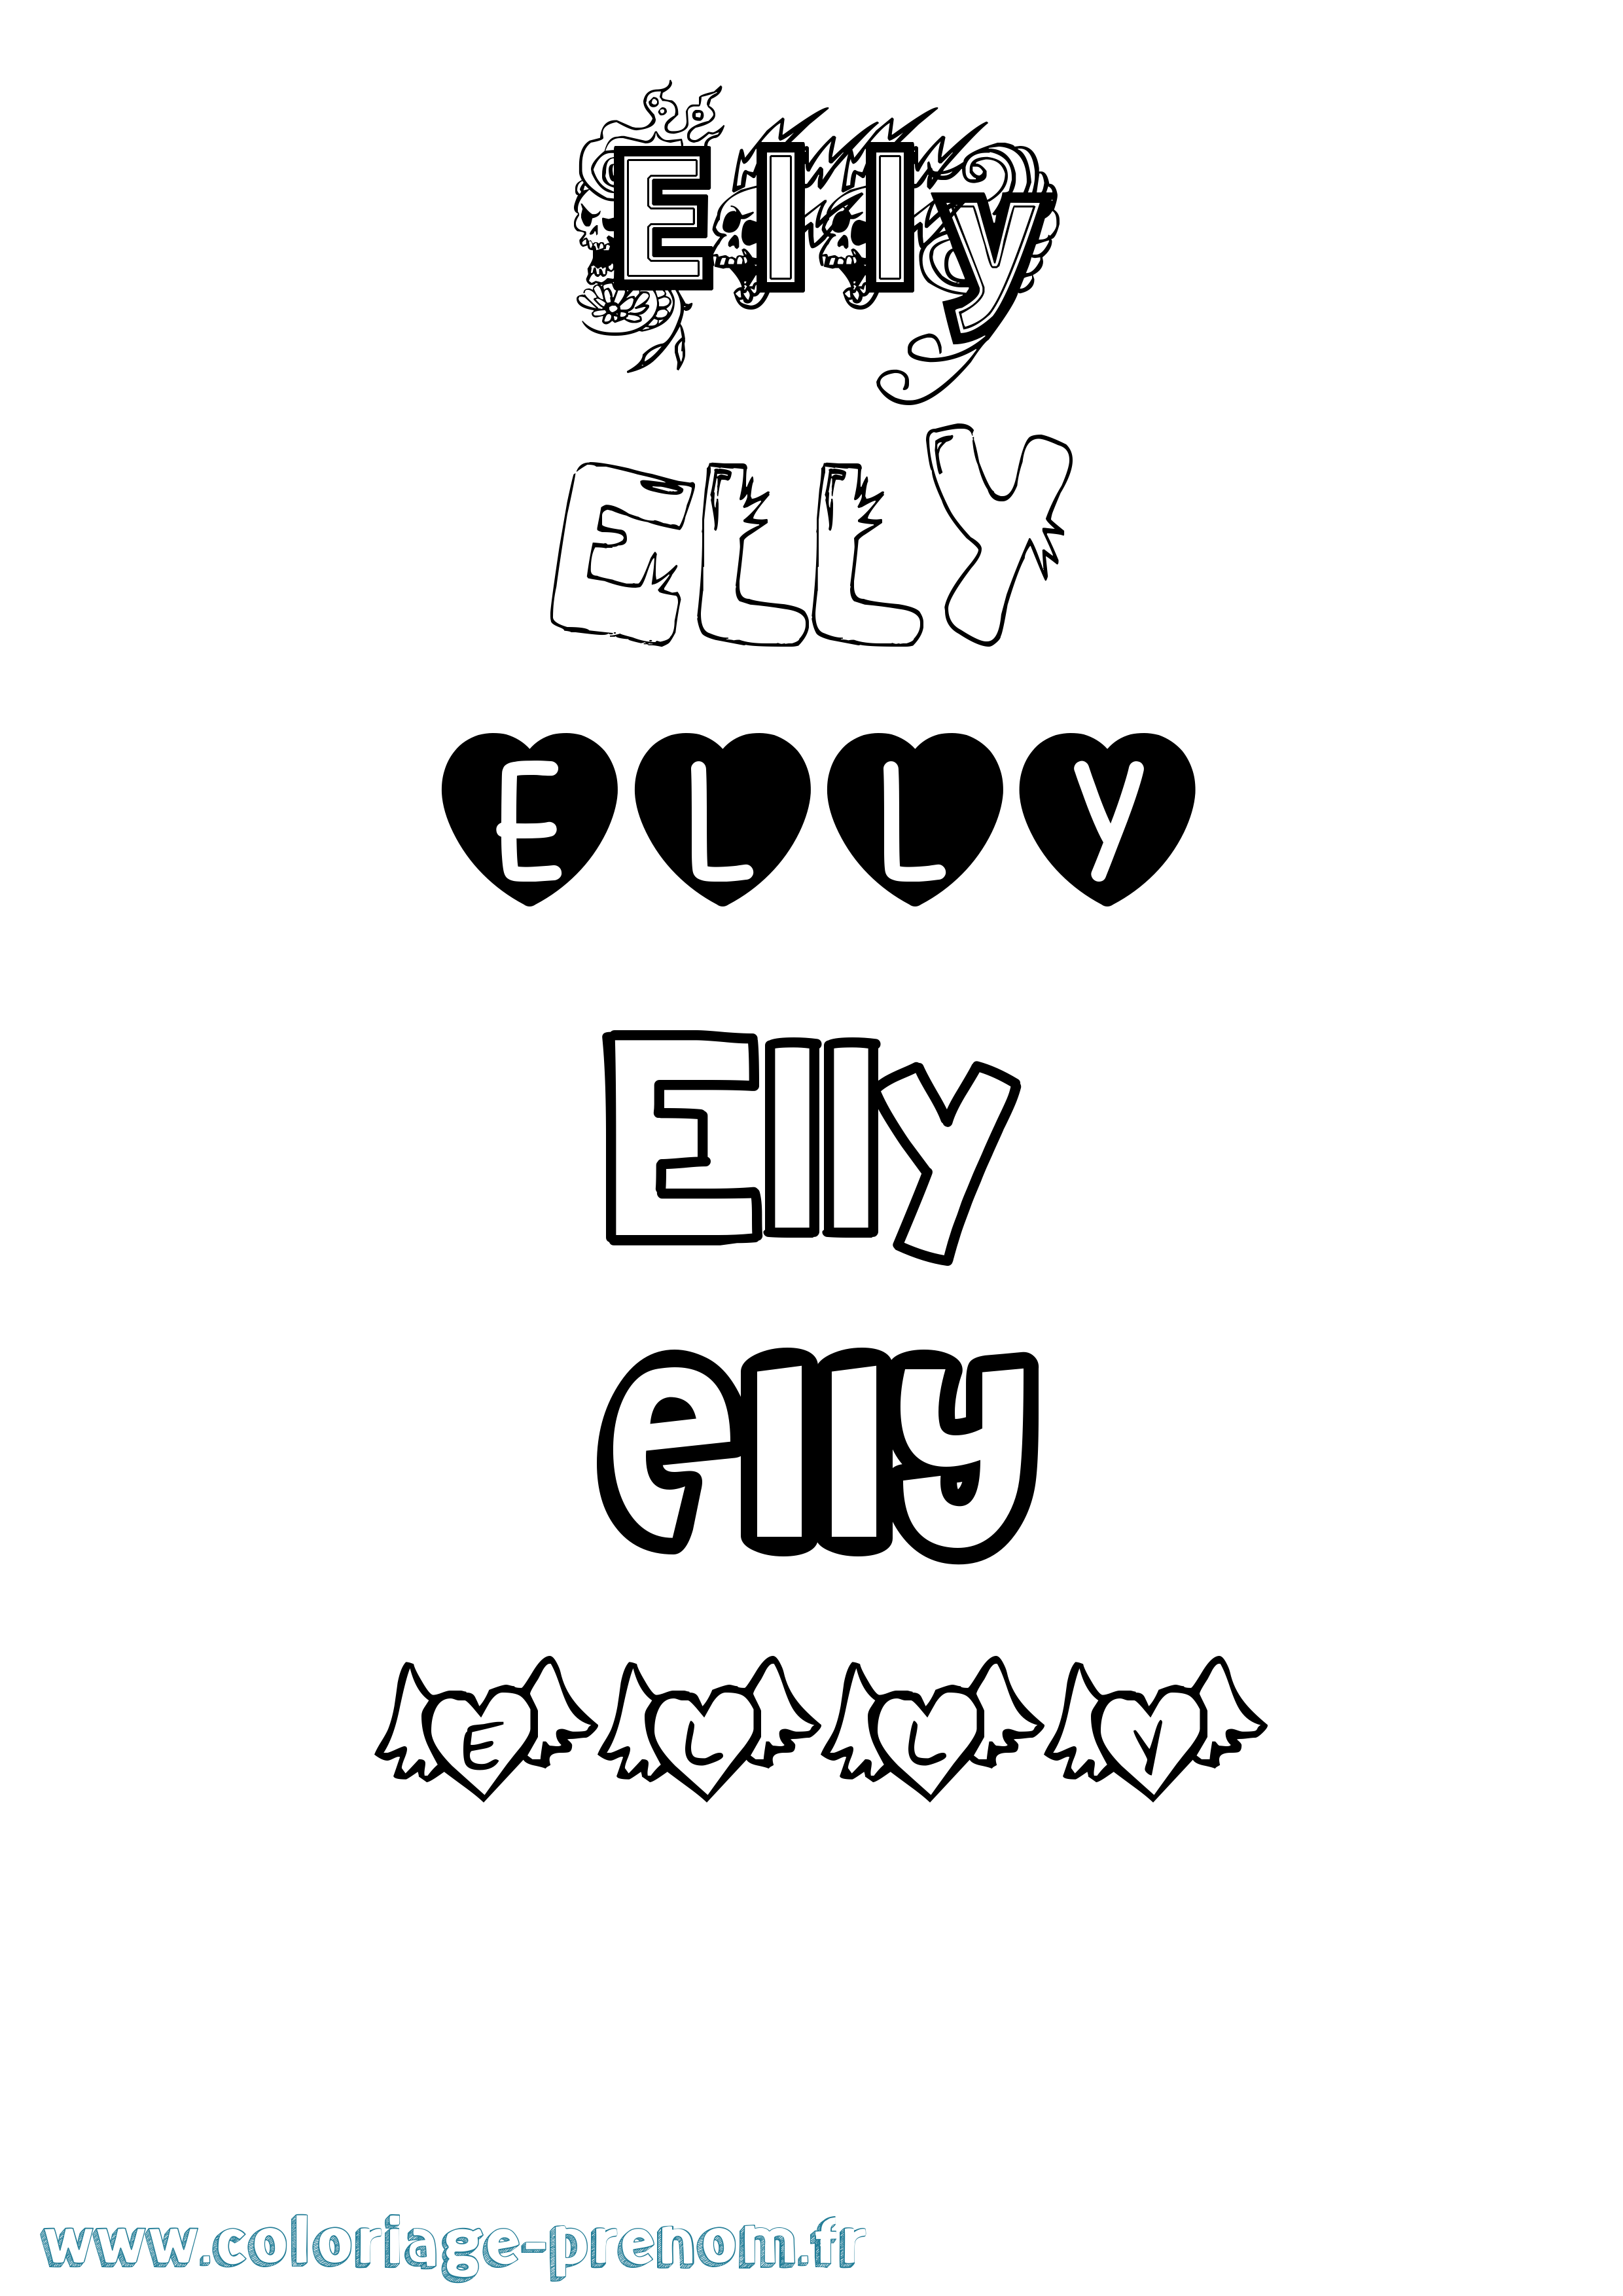 Coloriage prénom Elly Girly